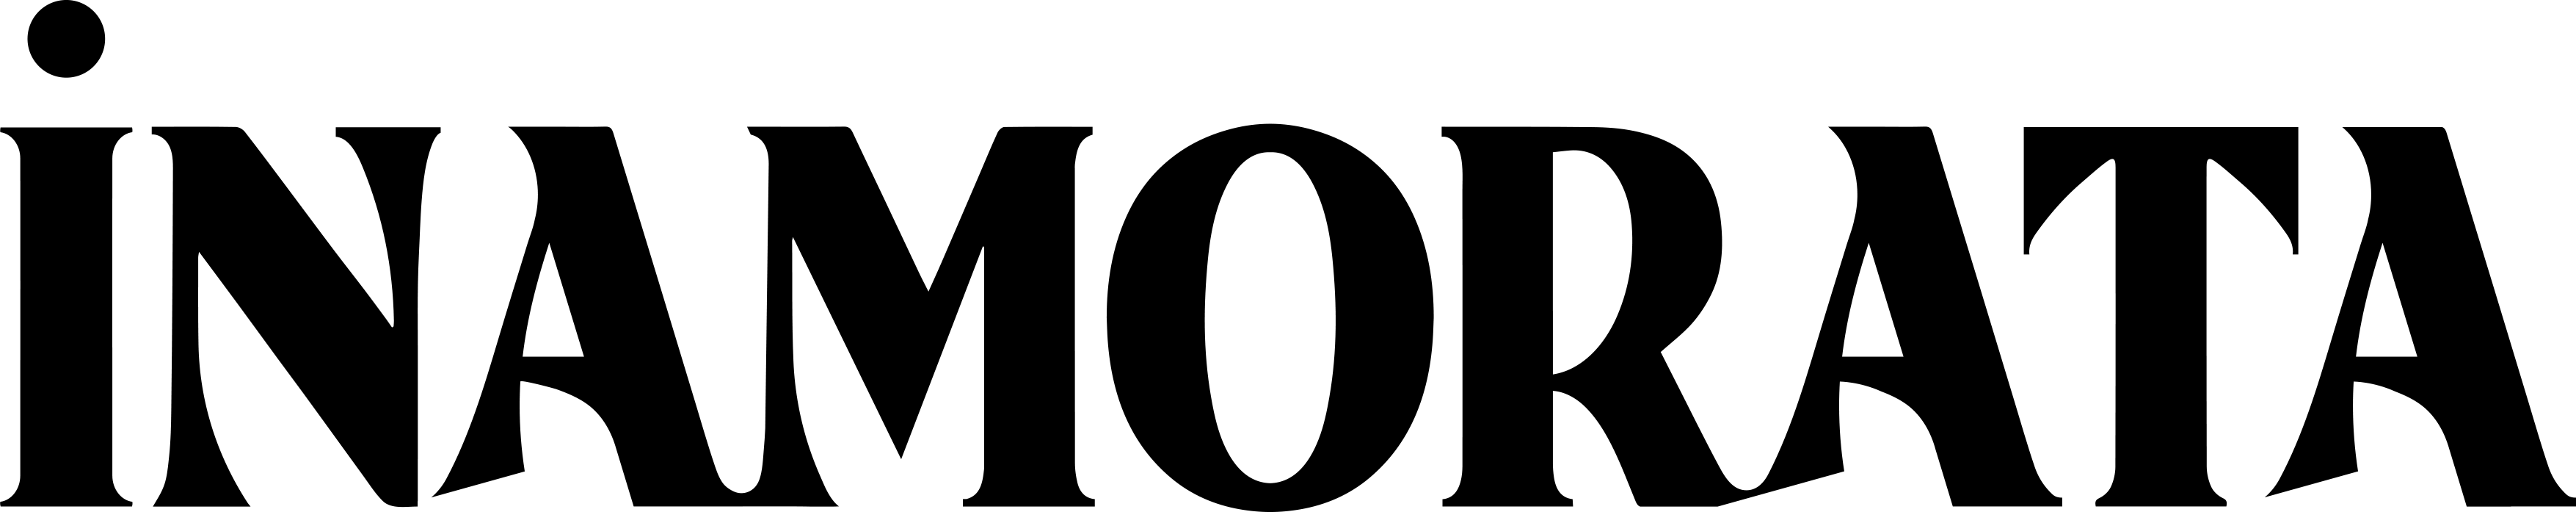 Inamorata Brand Logo PNG